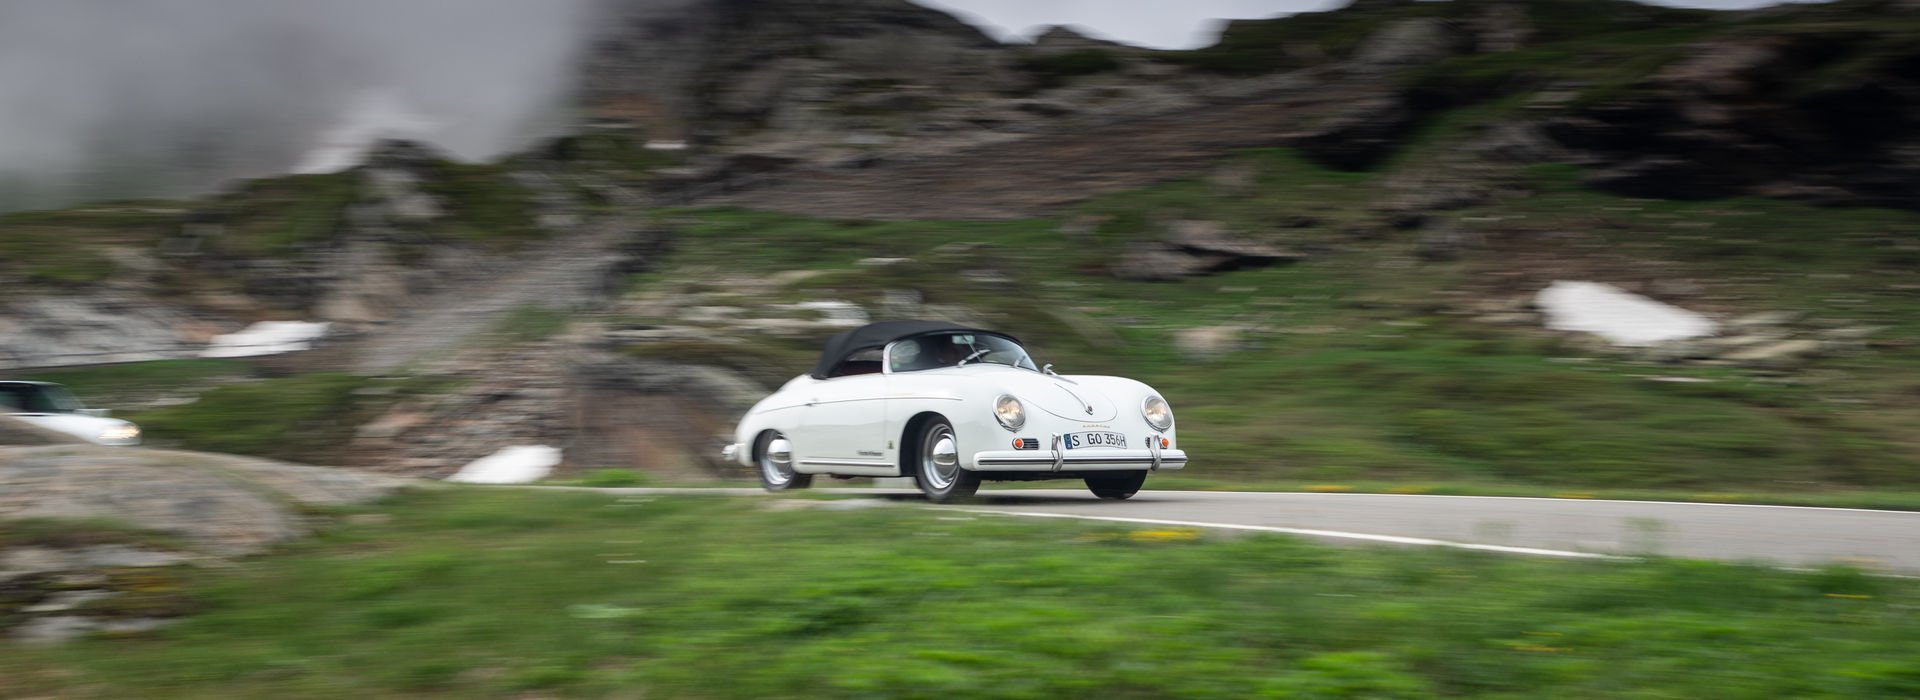 Klassiker: Porsche 356 Speedster 1955